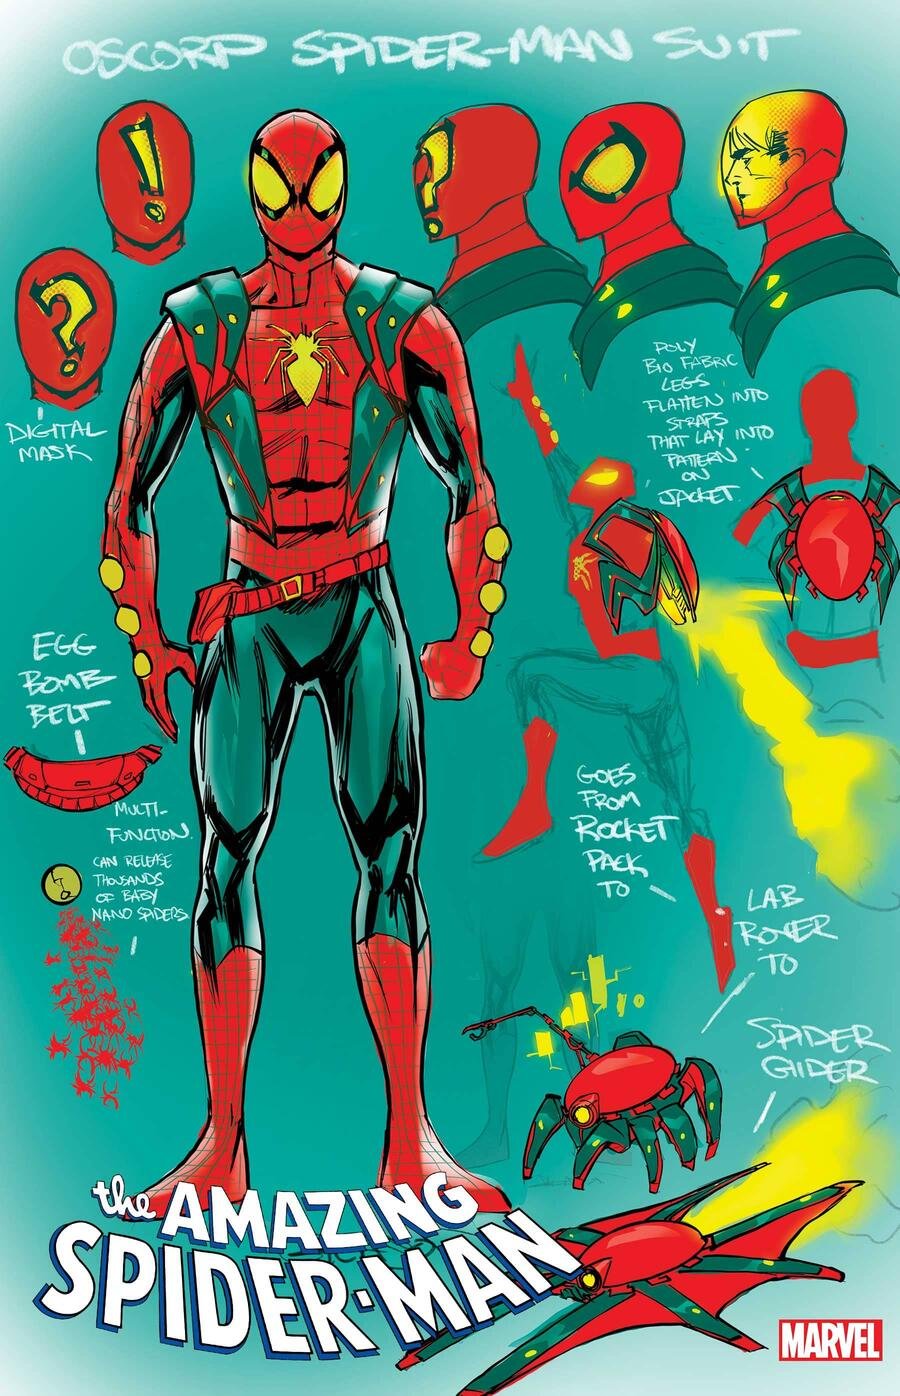 Il design del nuovo costume firmato Oscorp nella cover variant di Amazing Spider-Man 7 di Patrick Gleason